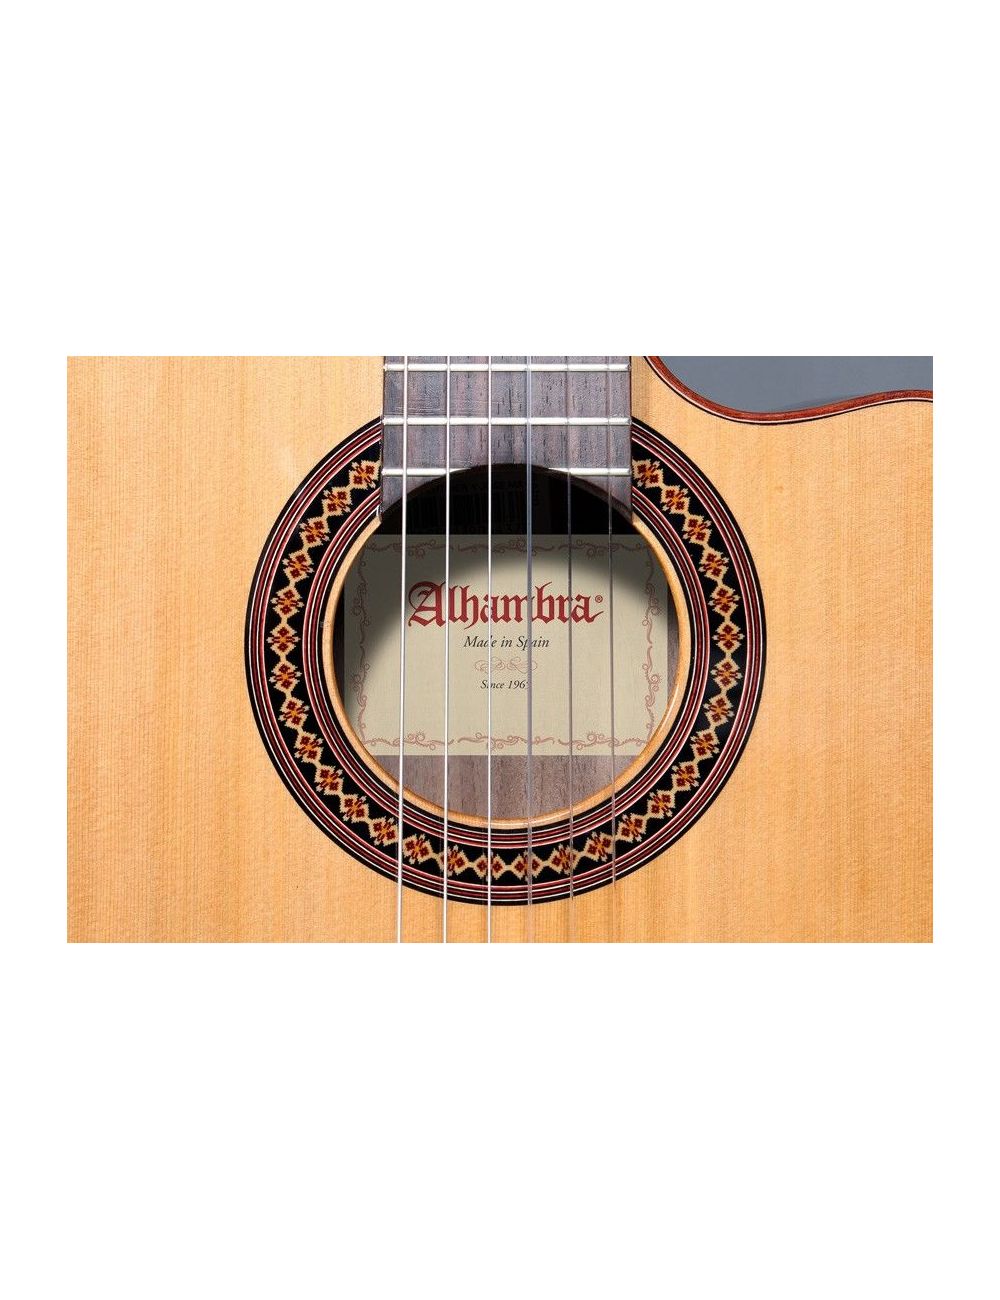 Alhambra Iberia Ziricote CTW E8 Guitare Electro Classique